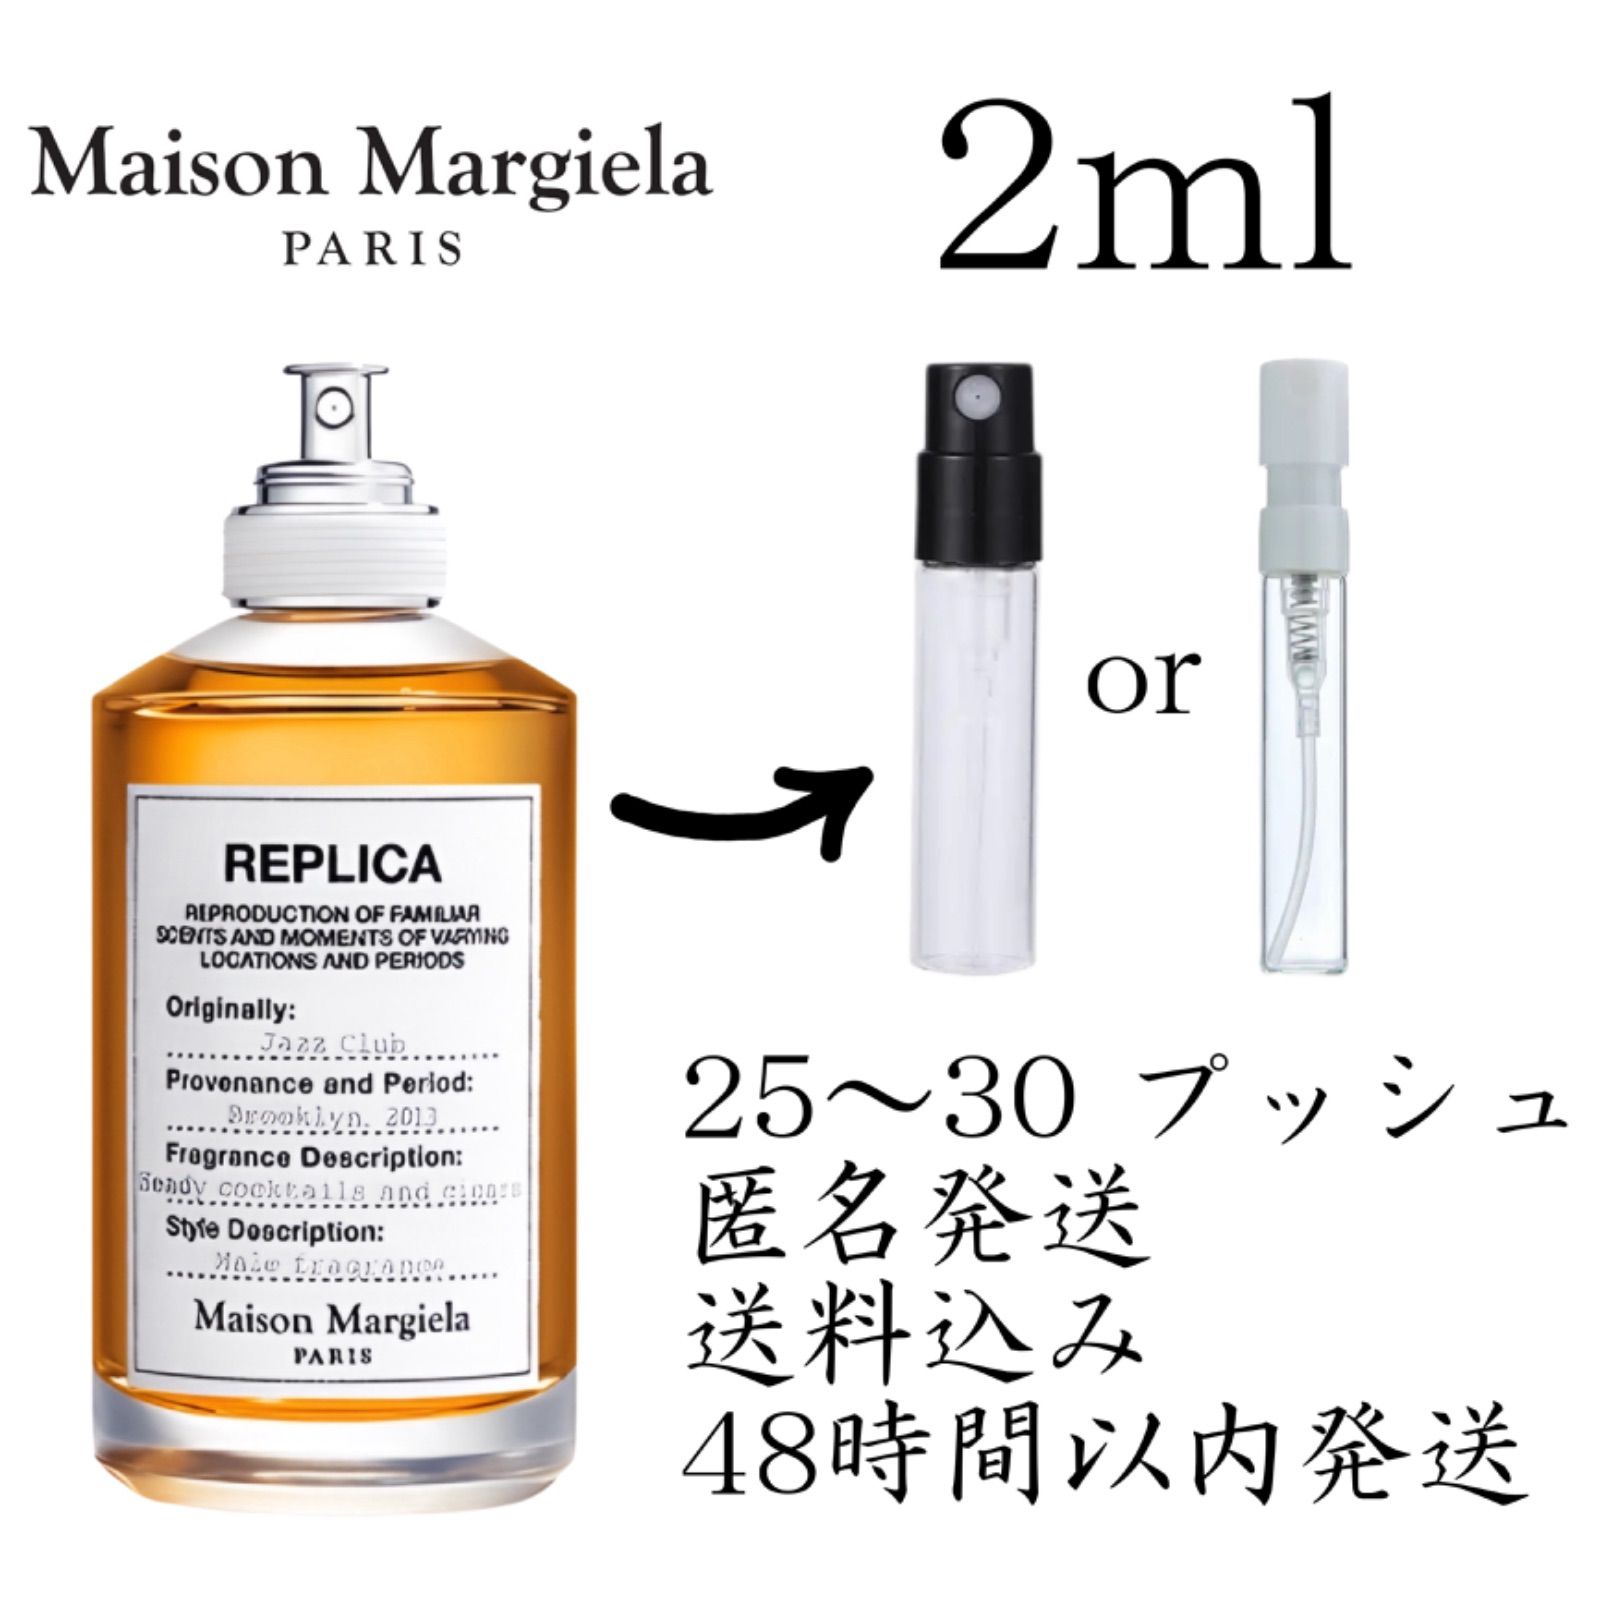 新品お試し香水2ml Maison Margiela Fragrances(メゾン マルジェラ